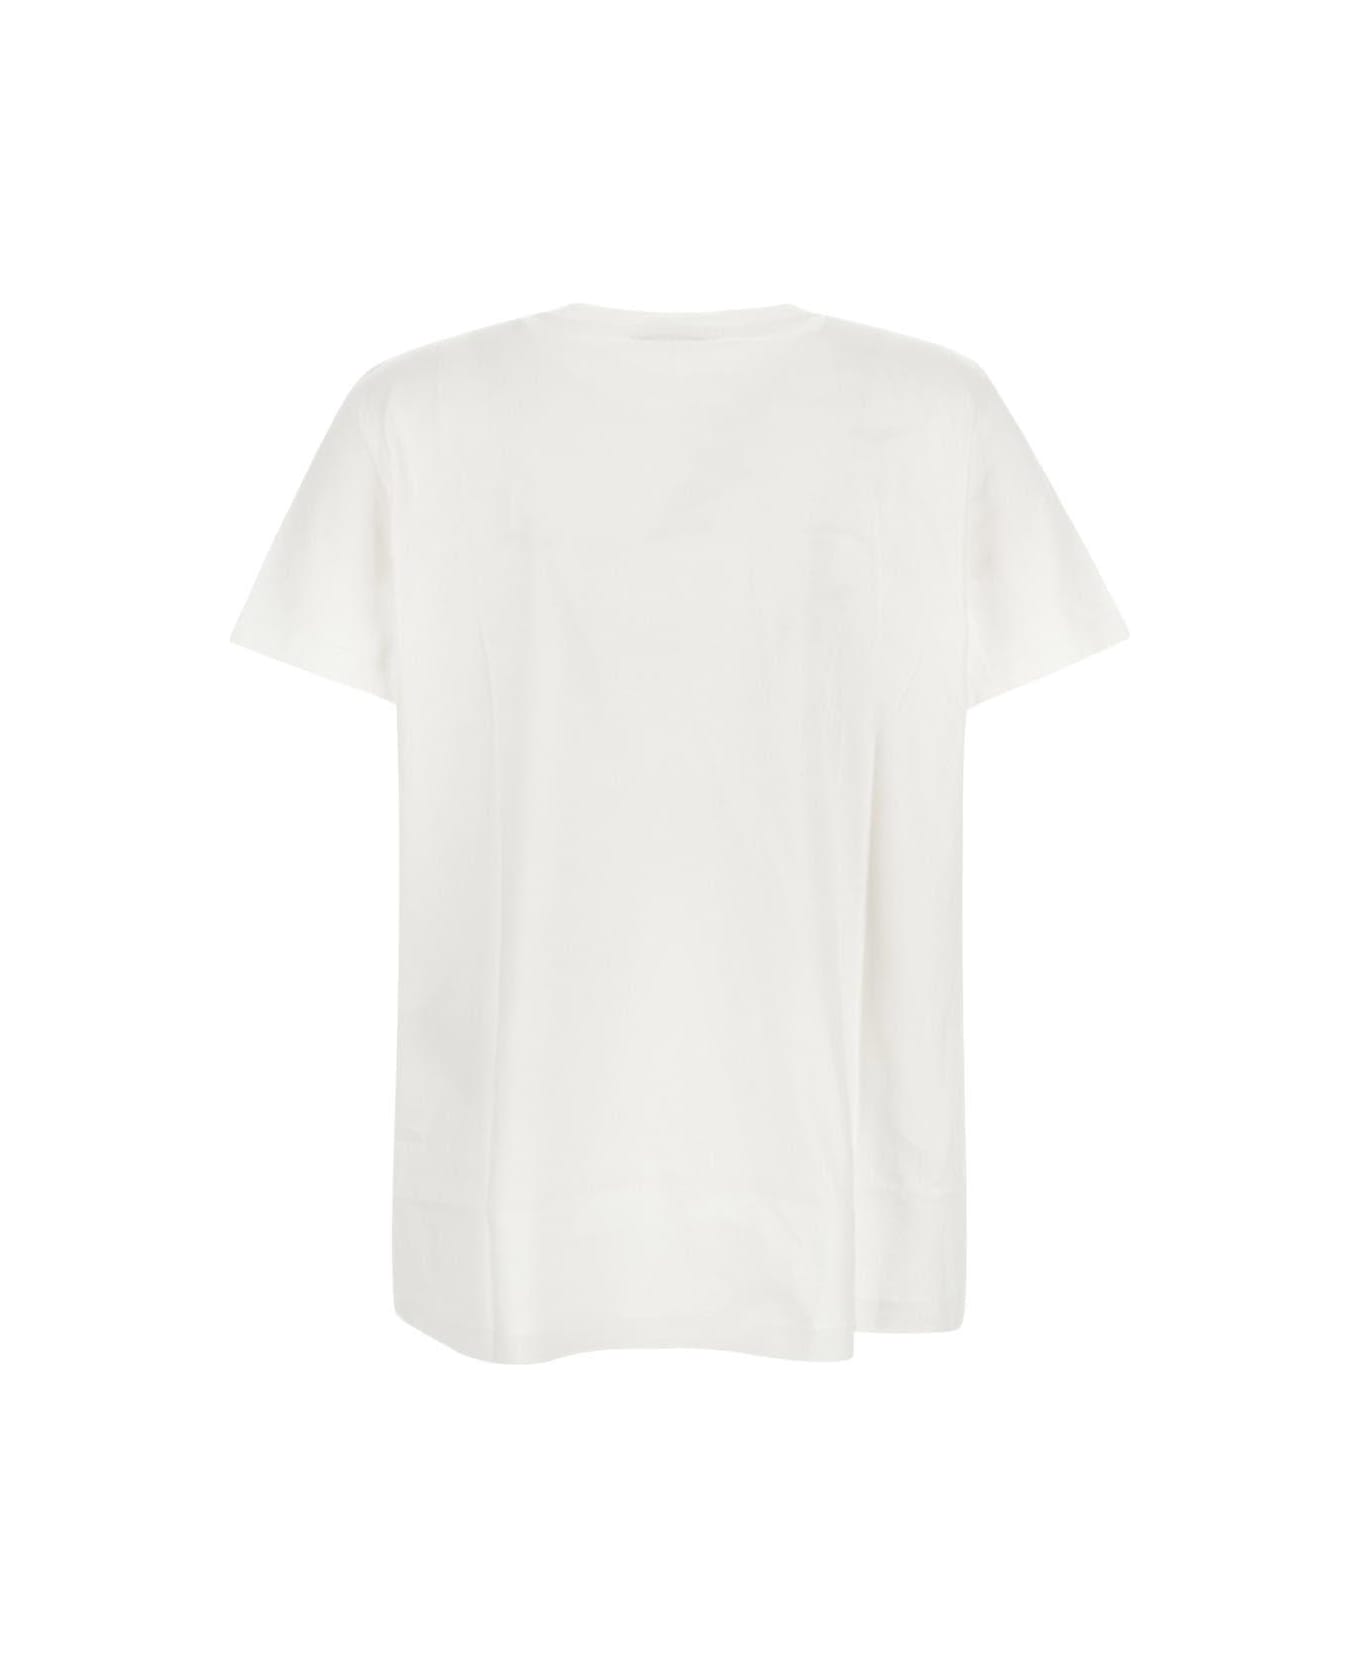 Max Mara Embroidered T-shirt - White Tシャツ